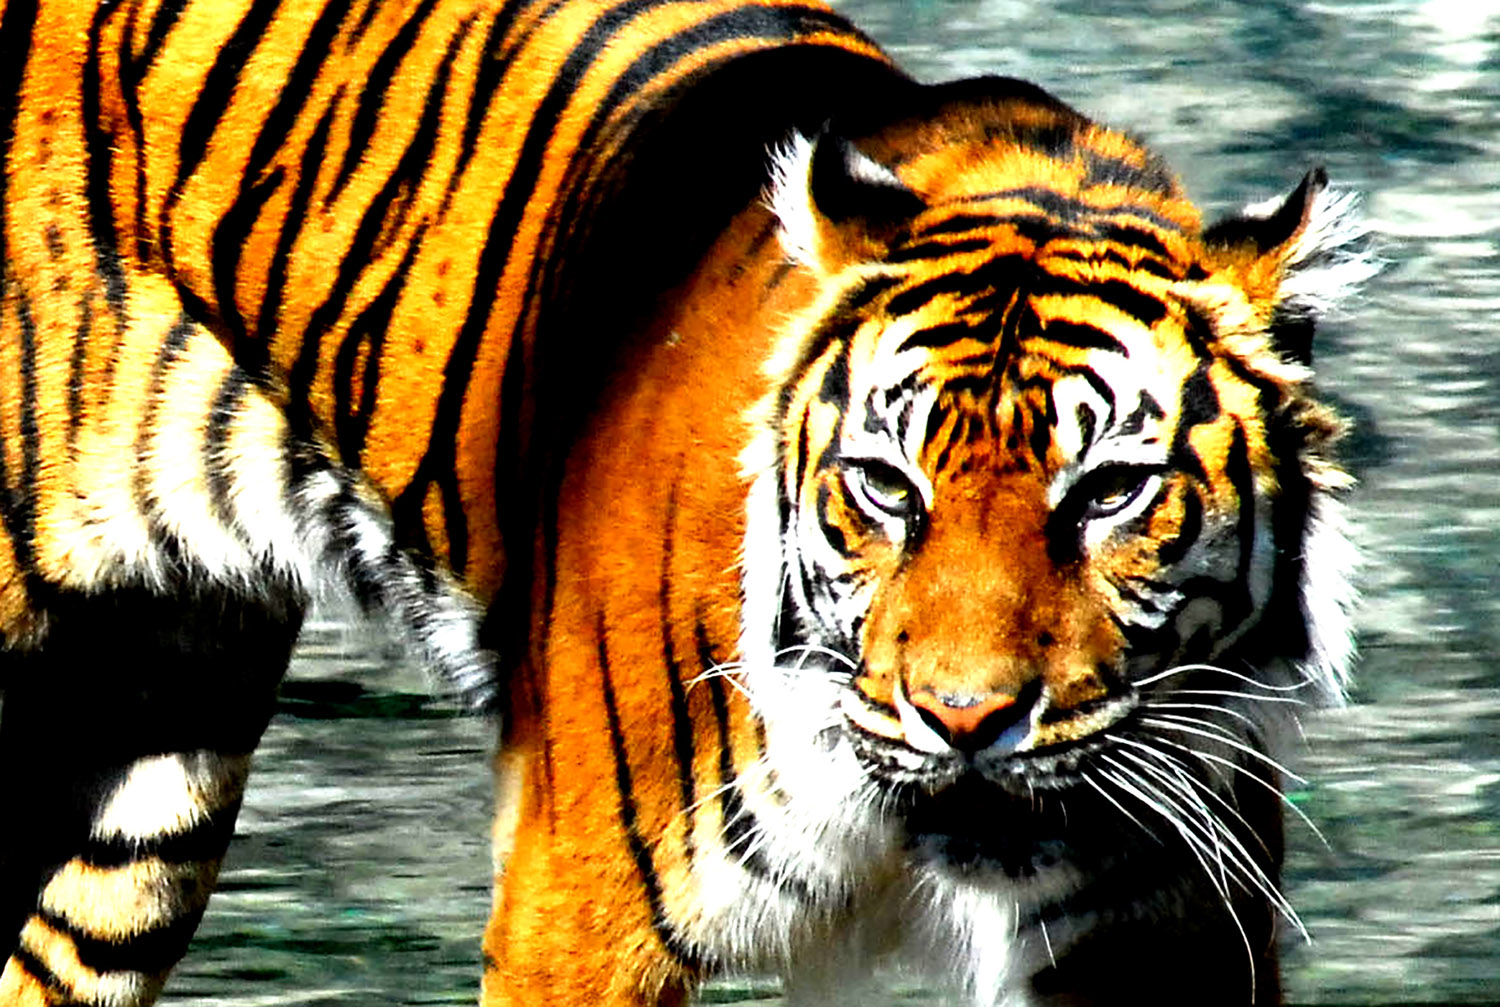 Tiger_Panthera tigris_Pacing_National_Zoo_Washington_DC.jpg